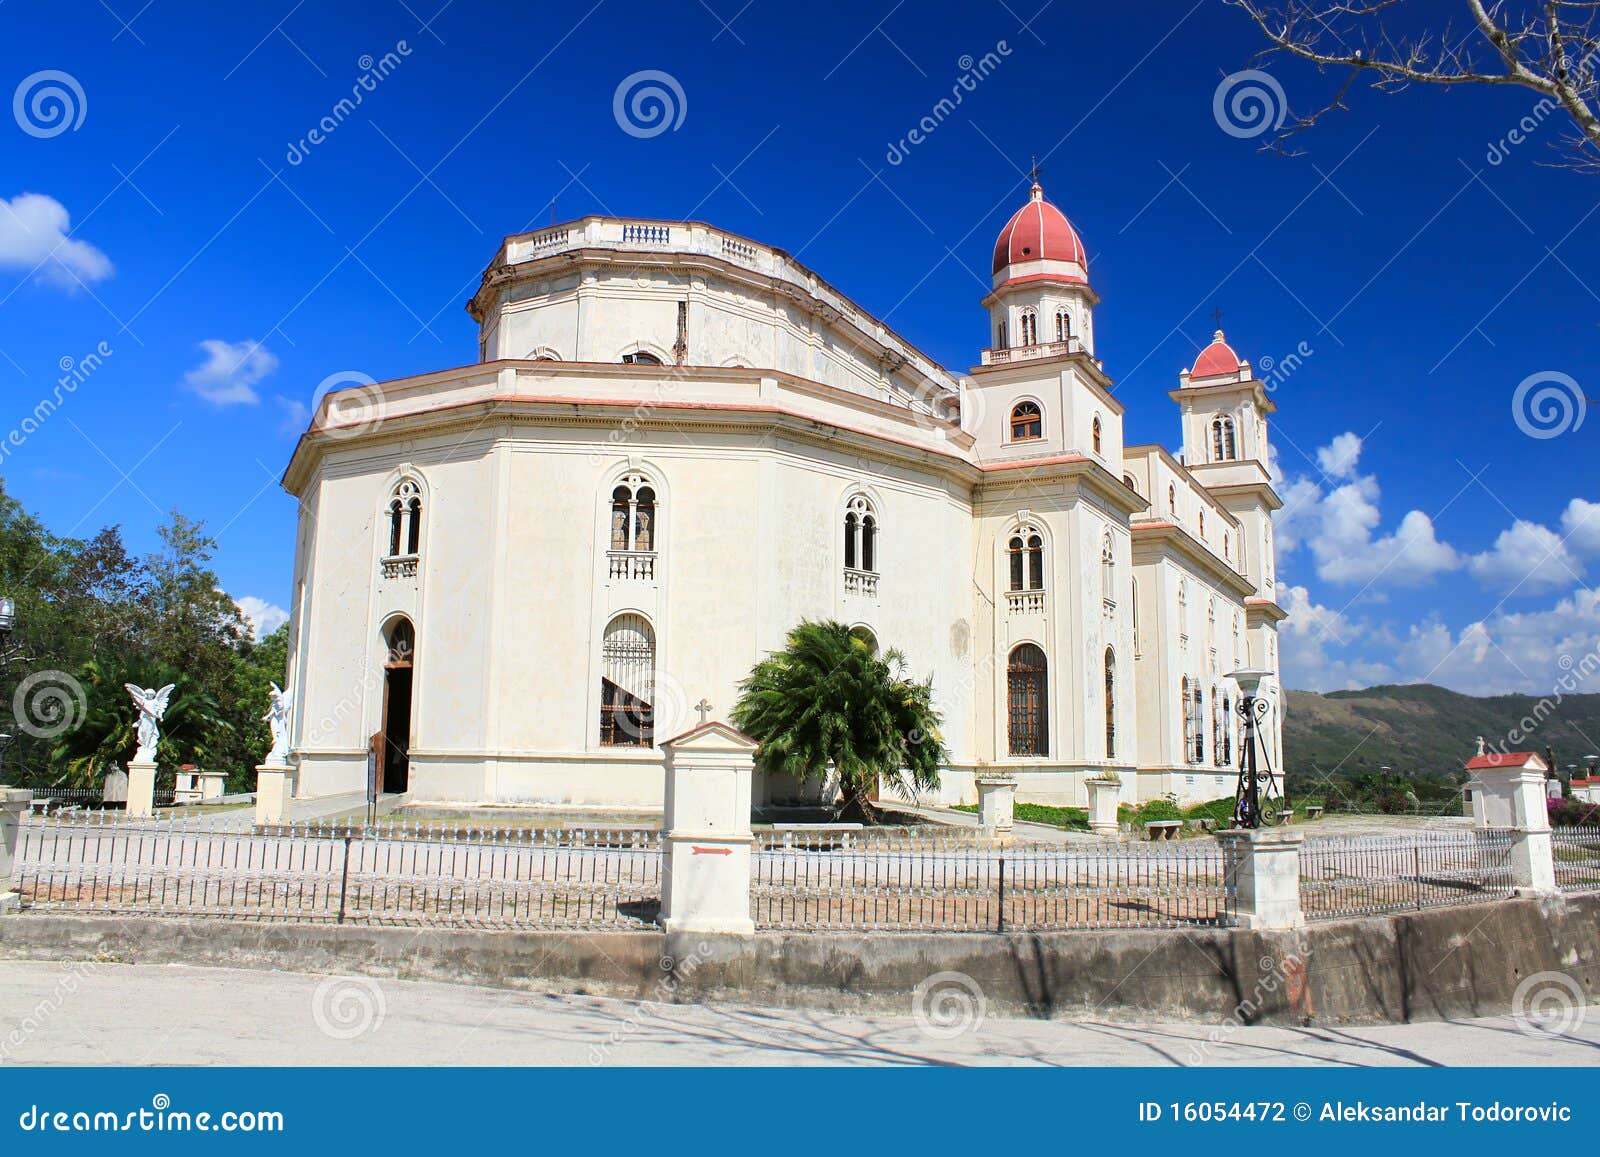 el cobre church , santiago de cuba